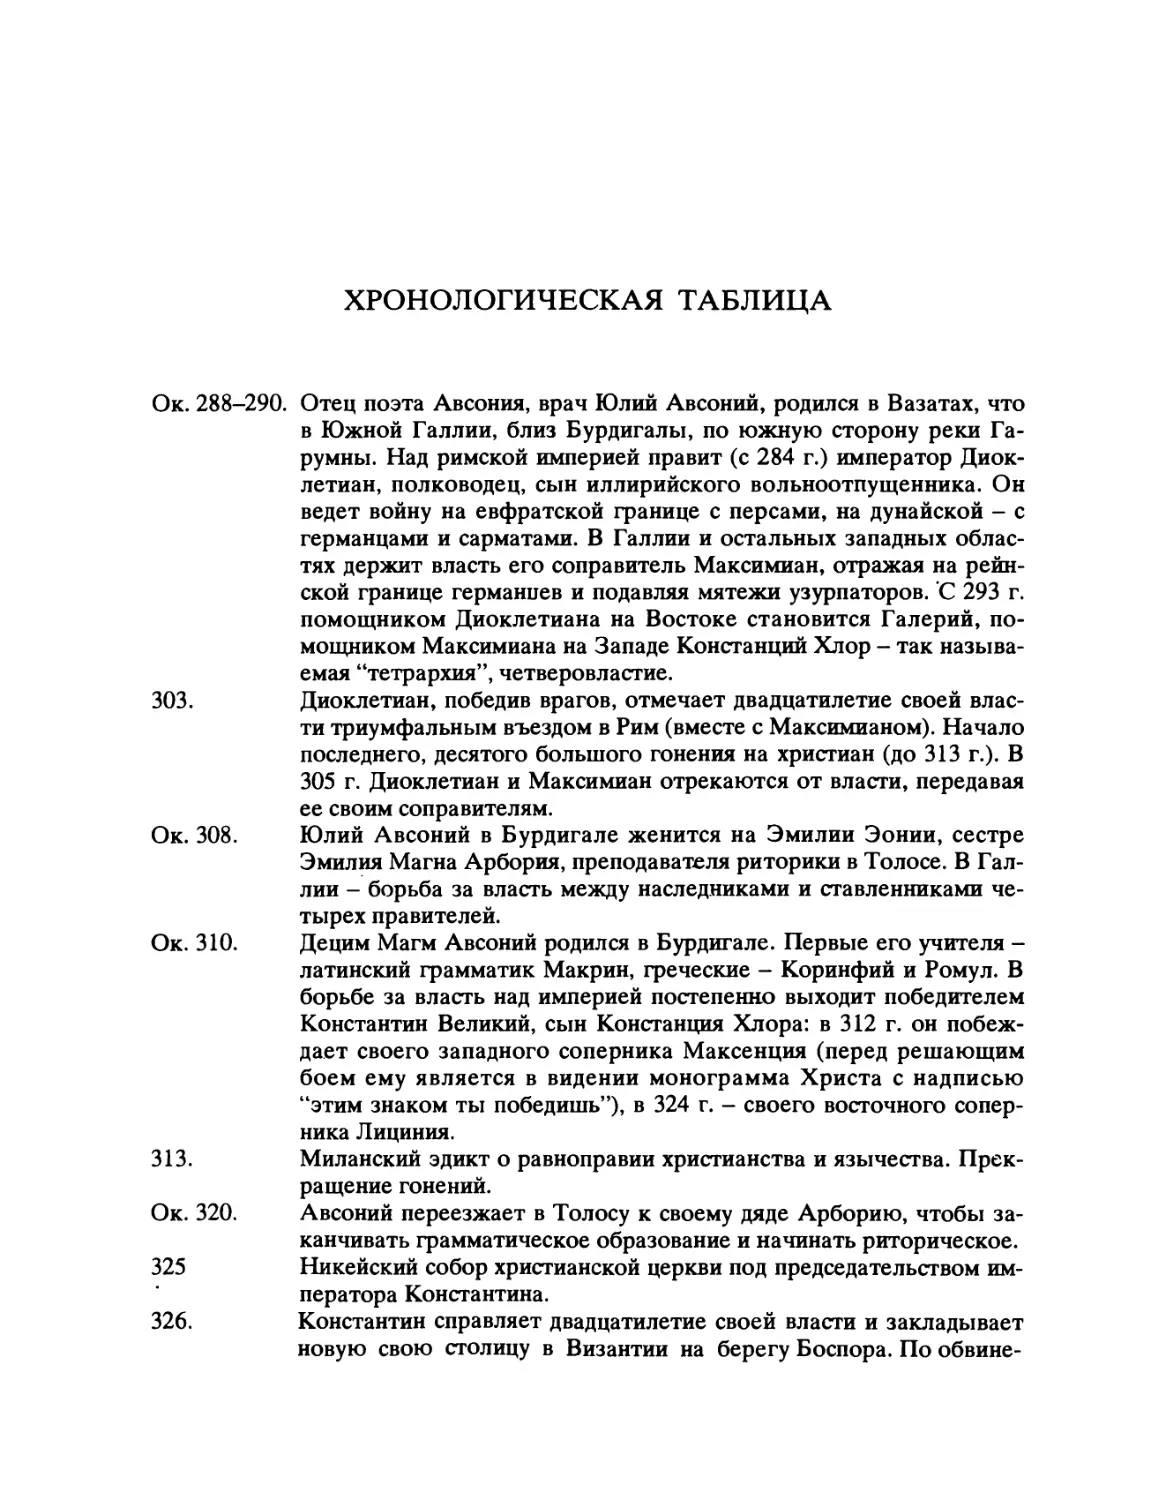 Хронологическая таблица. Сост. М.Л. Гаспаров